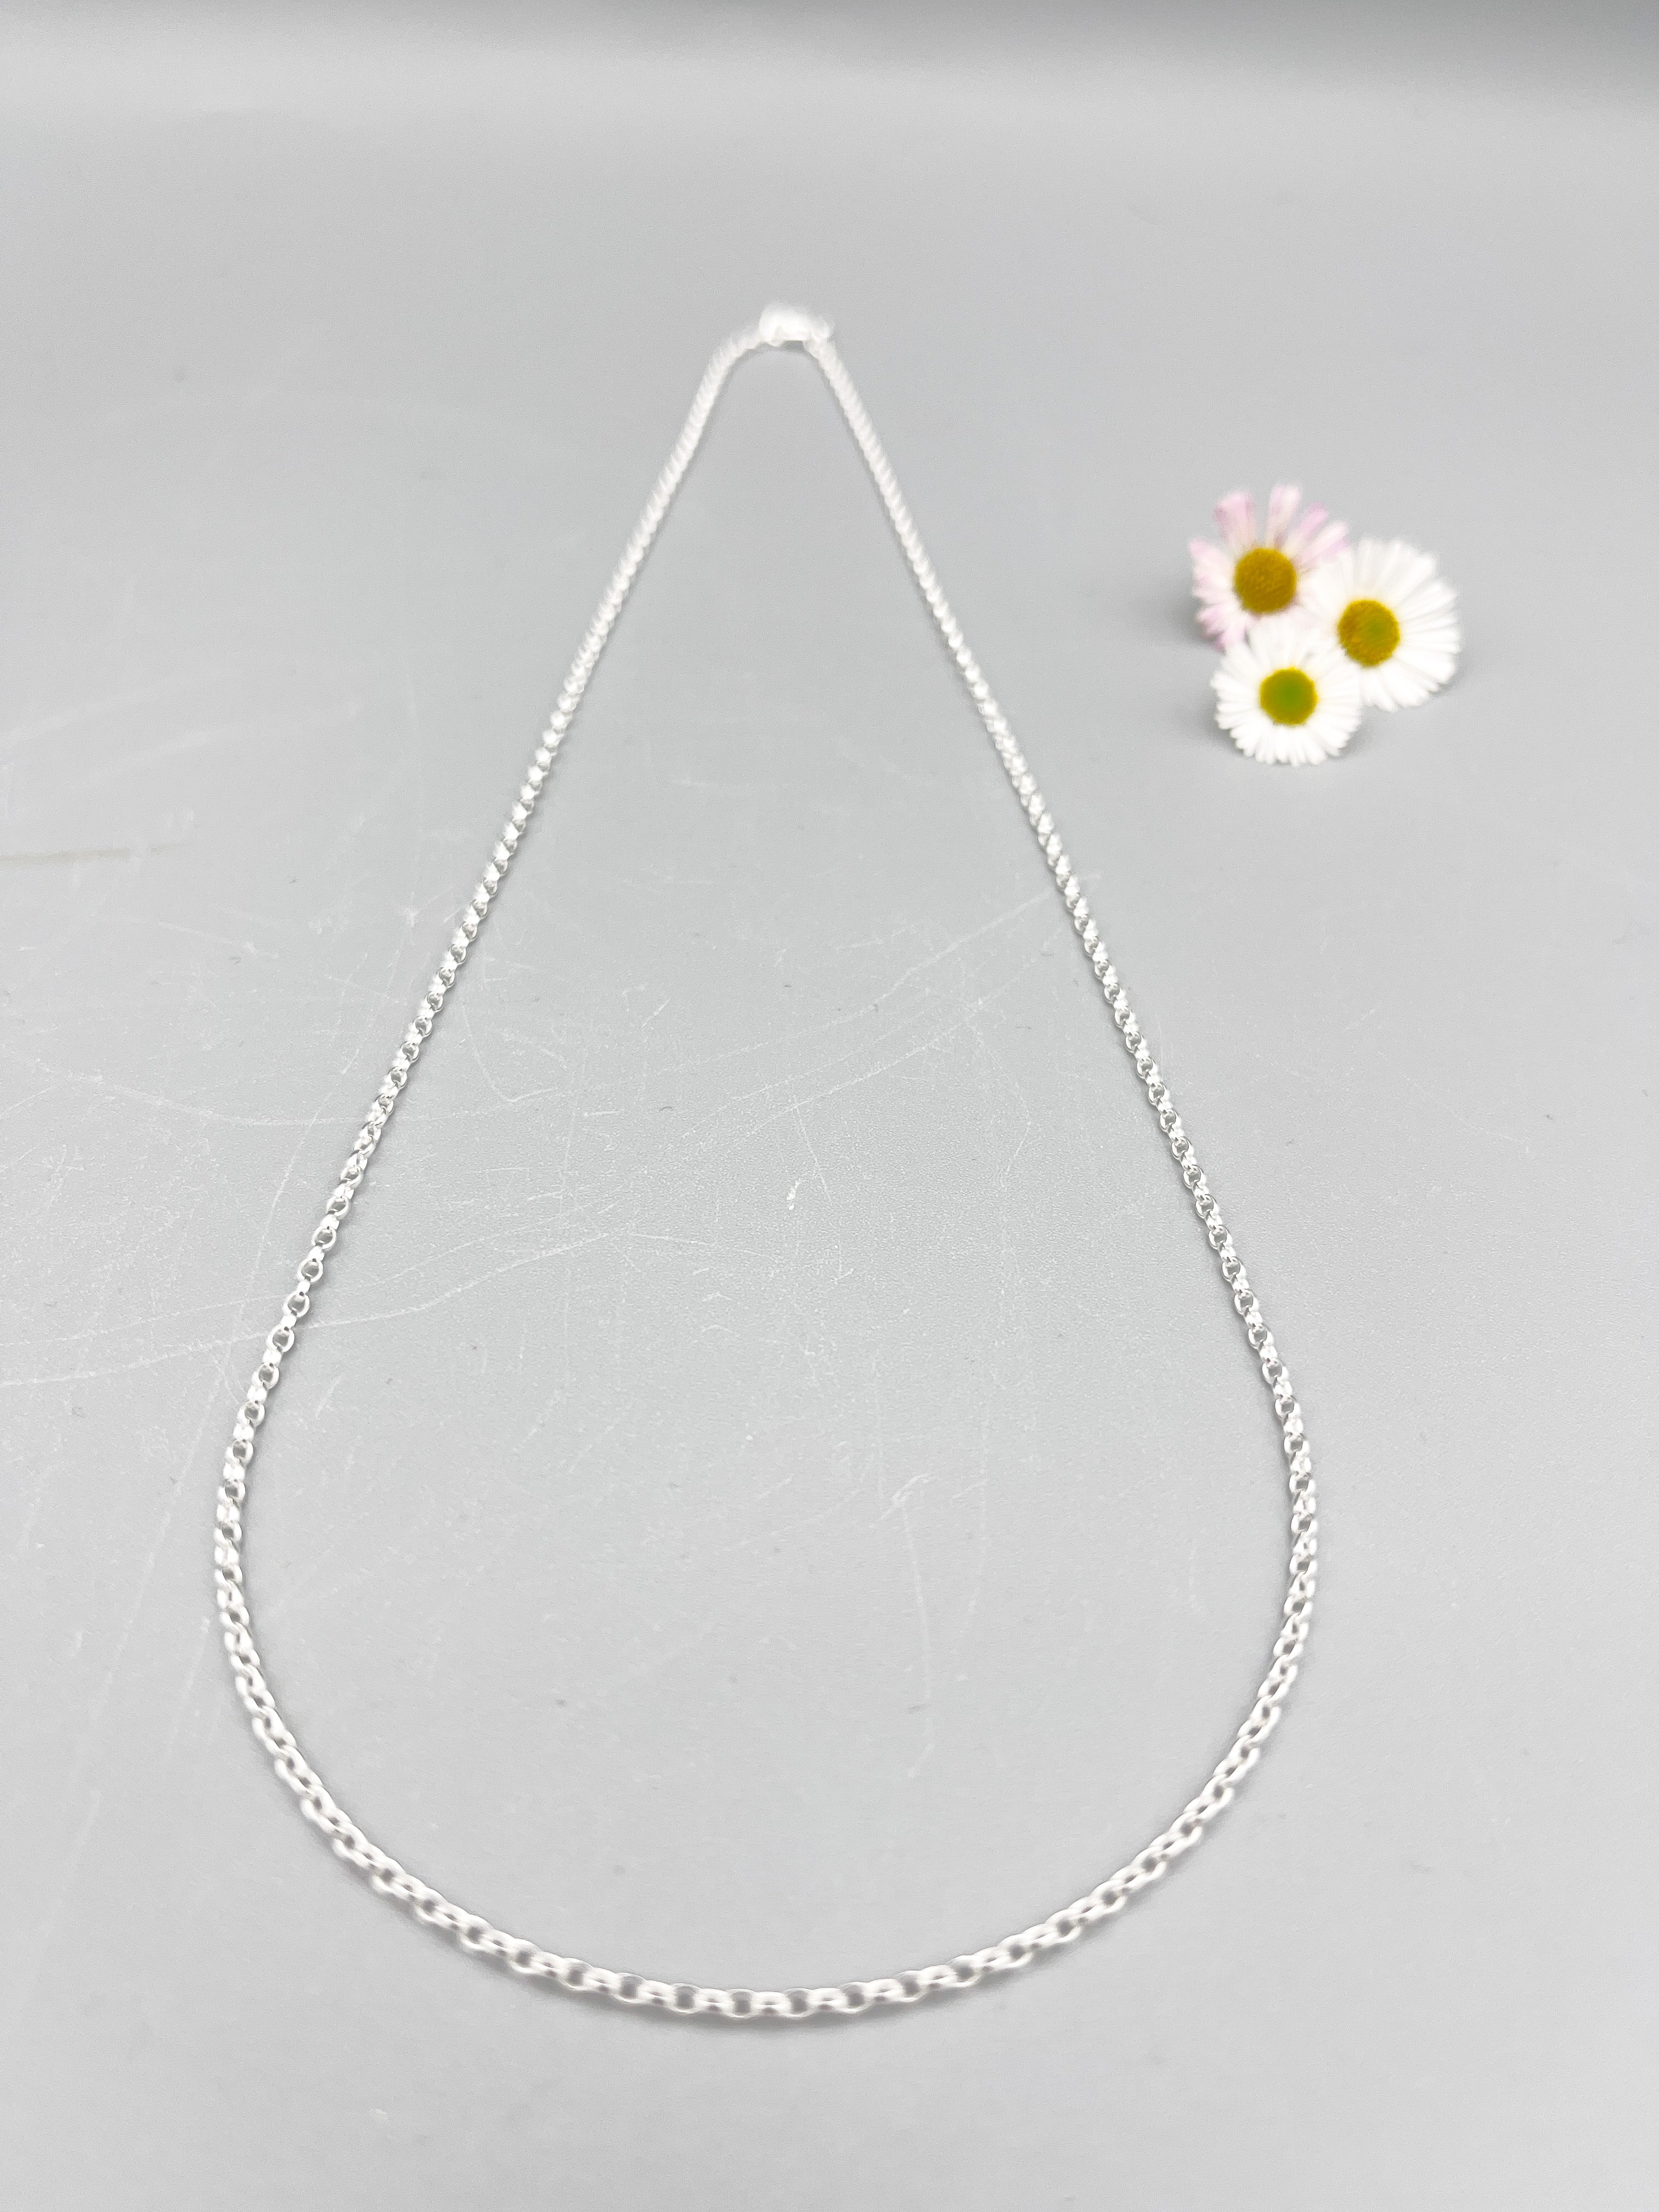 Sterling Silver Necklace. 18” (45cm) long polished 1.7mm polished belcher link